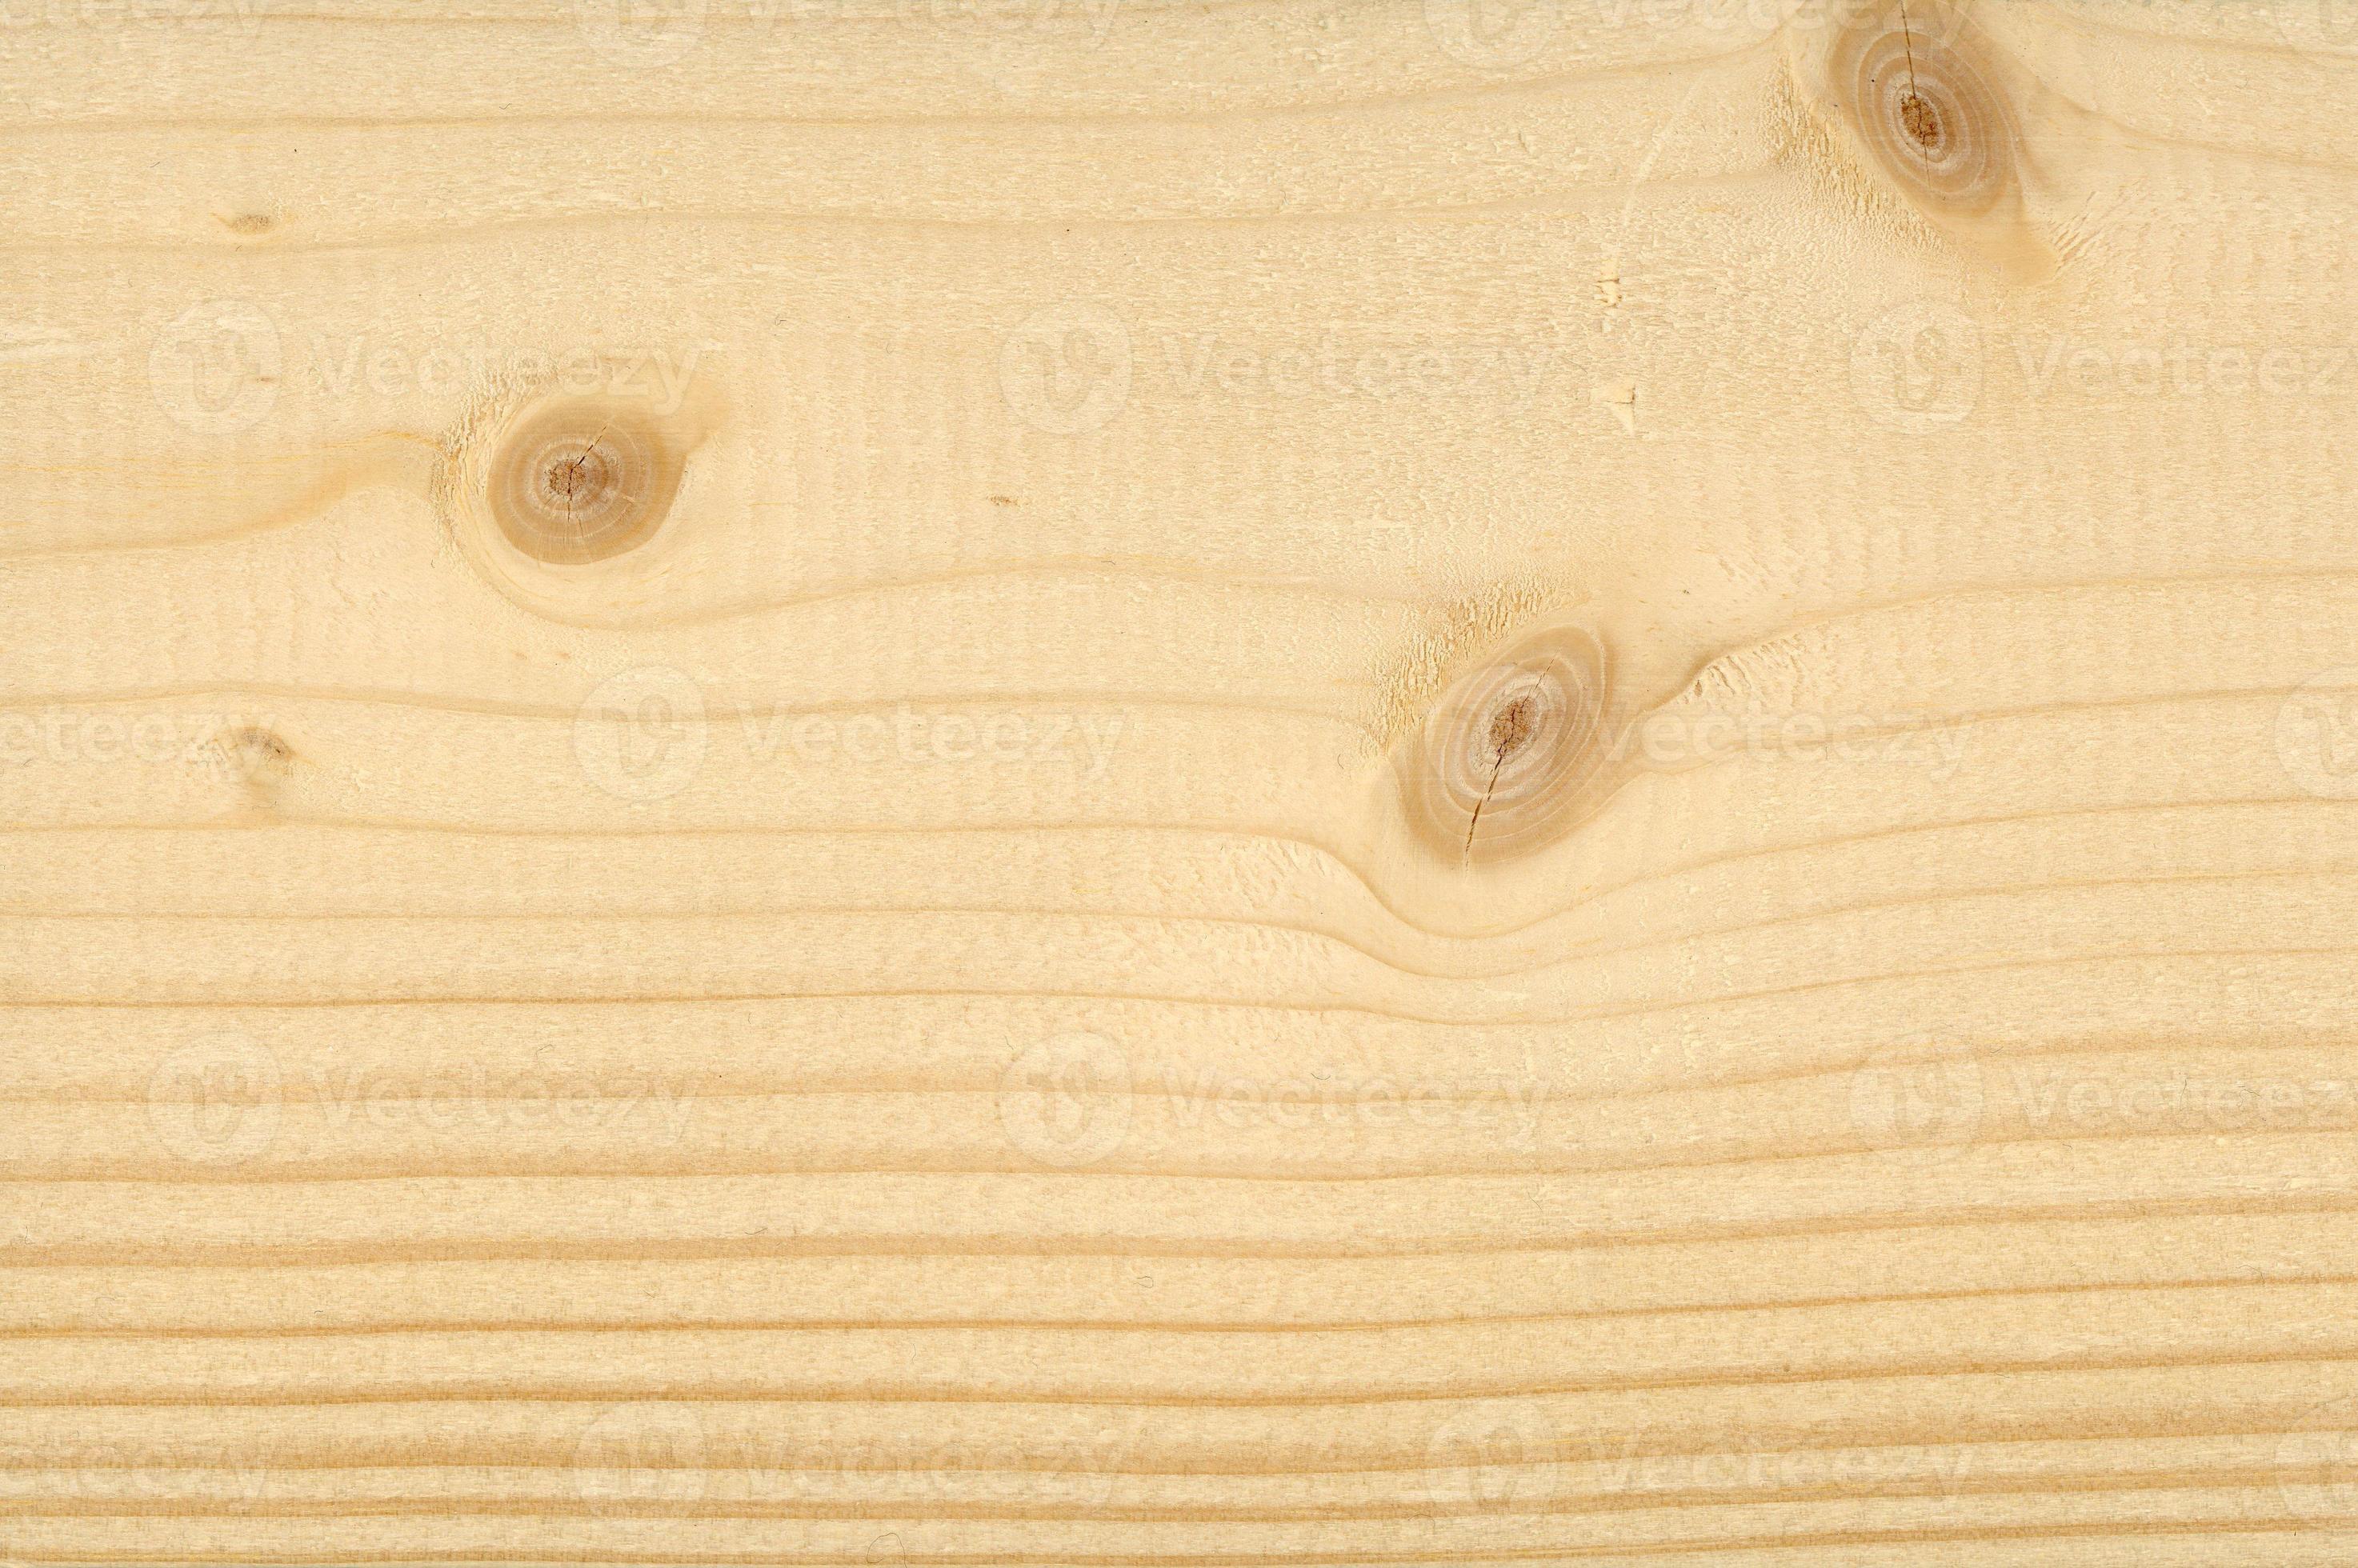 Với đường nét tự nhiên, hạt gỗ mềm mại, và màu nâu đỏ đậm, gỗ thông là vật liệu hoàn hảo để tạo nên những sản phẩm độc đáo như tủ quần áo, bàn làm việc, hoặc tấm ốp tường. Hình ảnh sẽ giúp bạn cảm nhận được sự ấm áp và tự nhiên của gỗ thông.